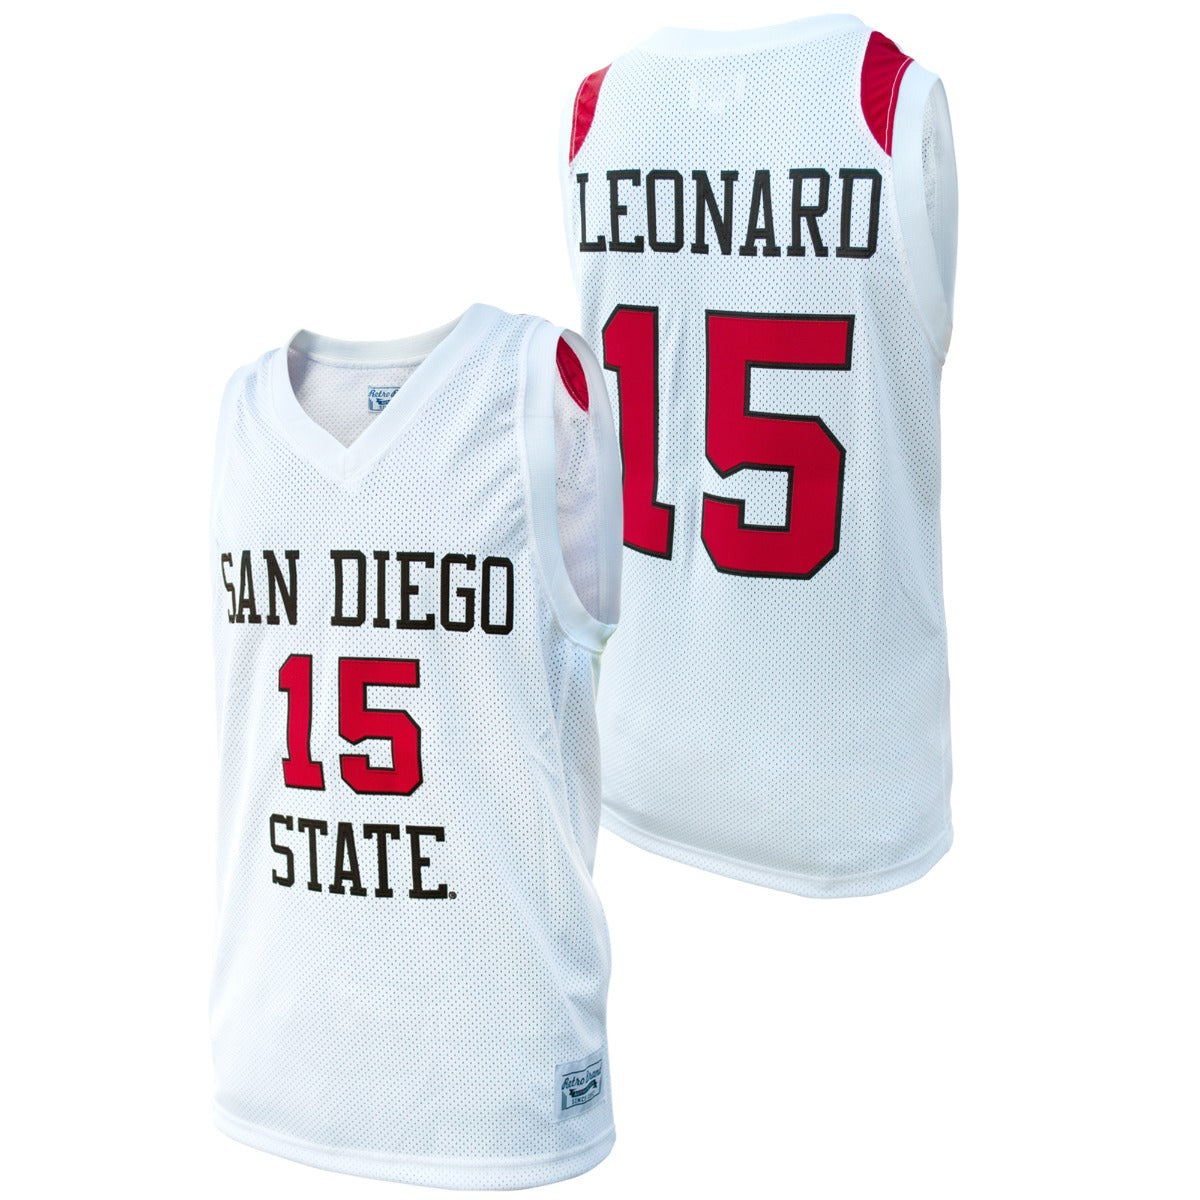 Kawhi Leonard #15 Basketball Jersey S White